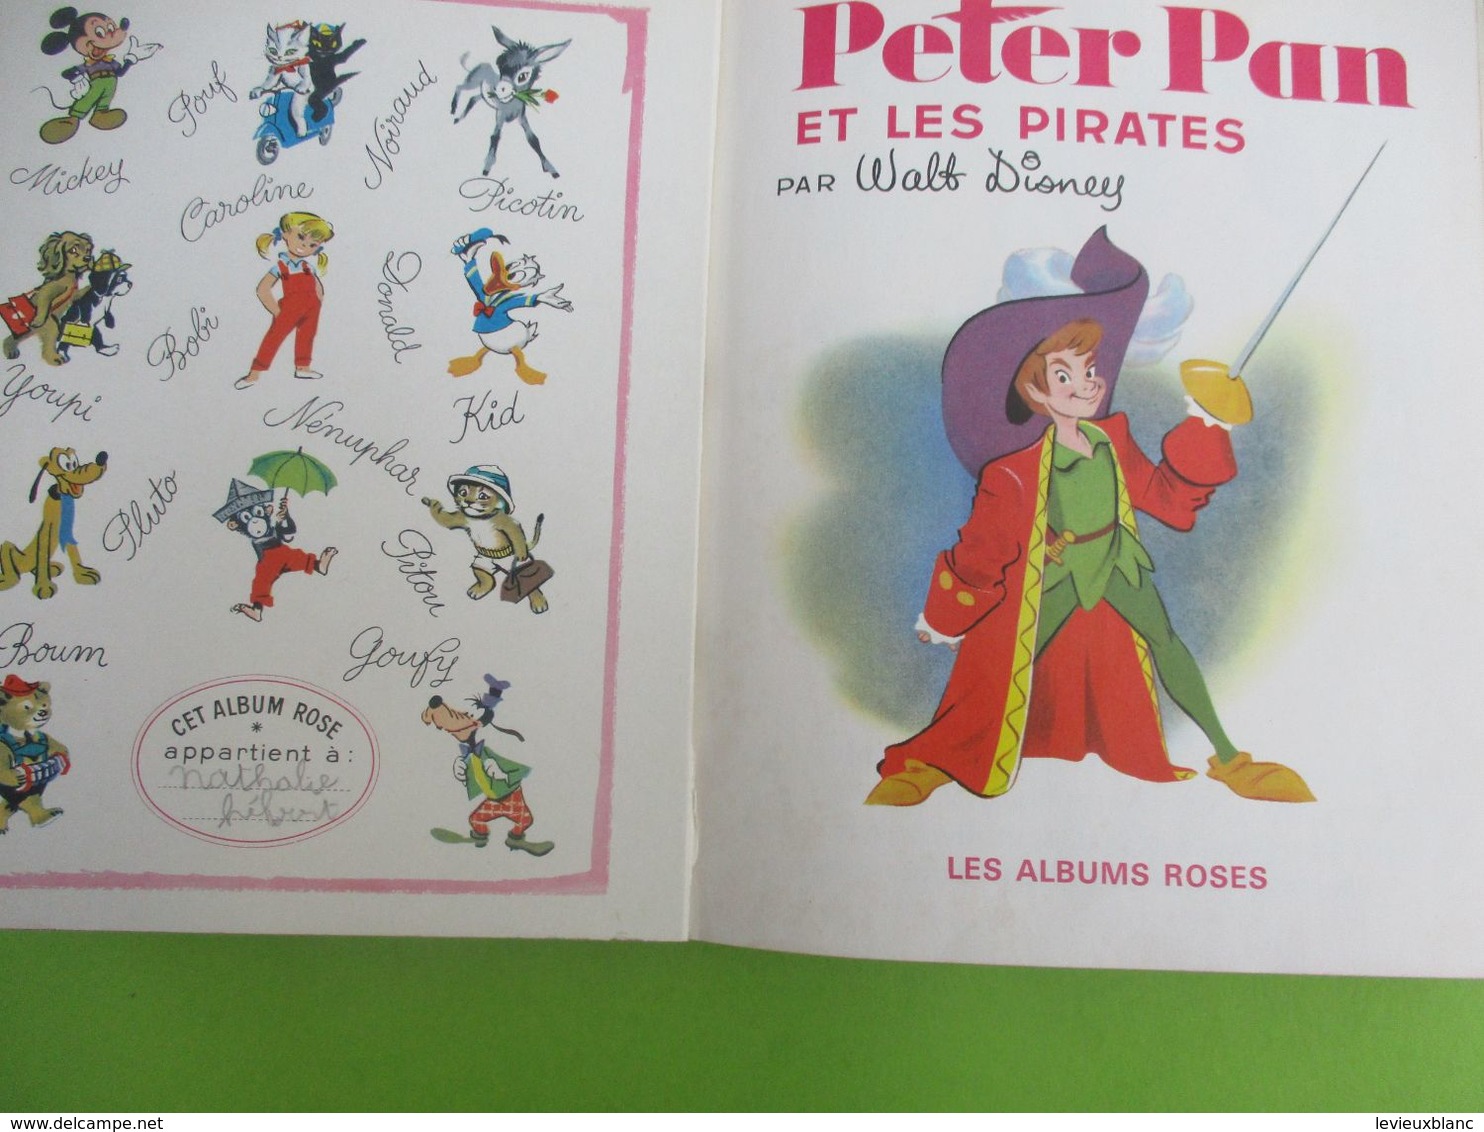 Les Albums Roses/"Peter Pan Et Les Pirates" /Walt Disney/Imprimeur Gibert-Clarey/TOURS/1969   PLR14 - Hachette